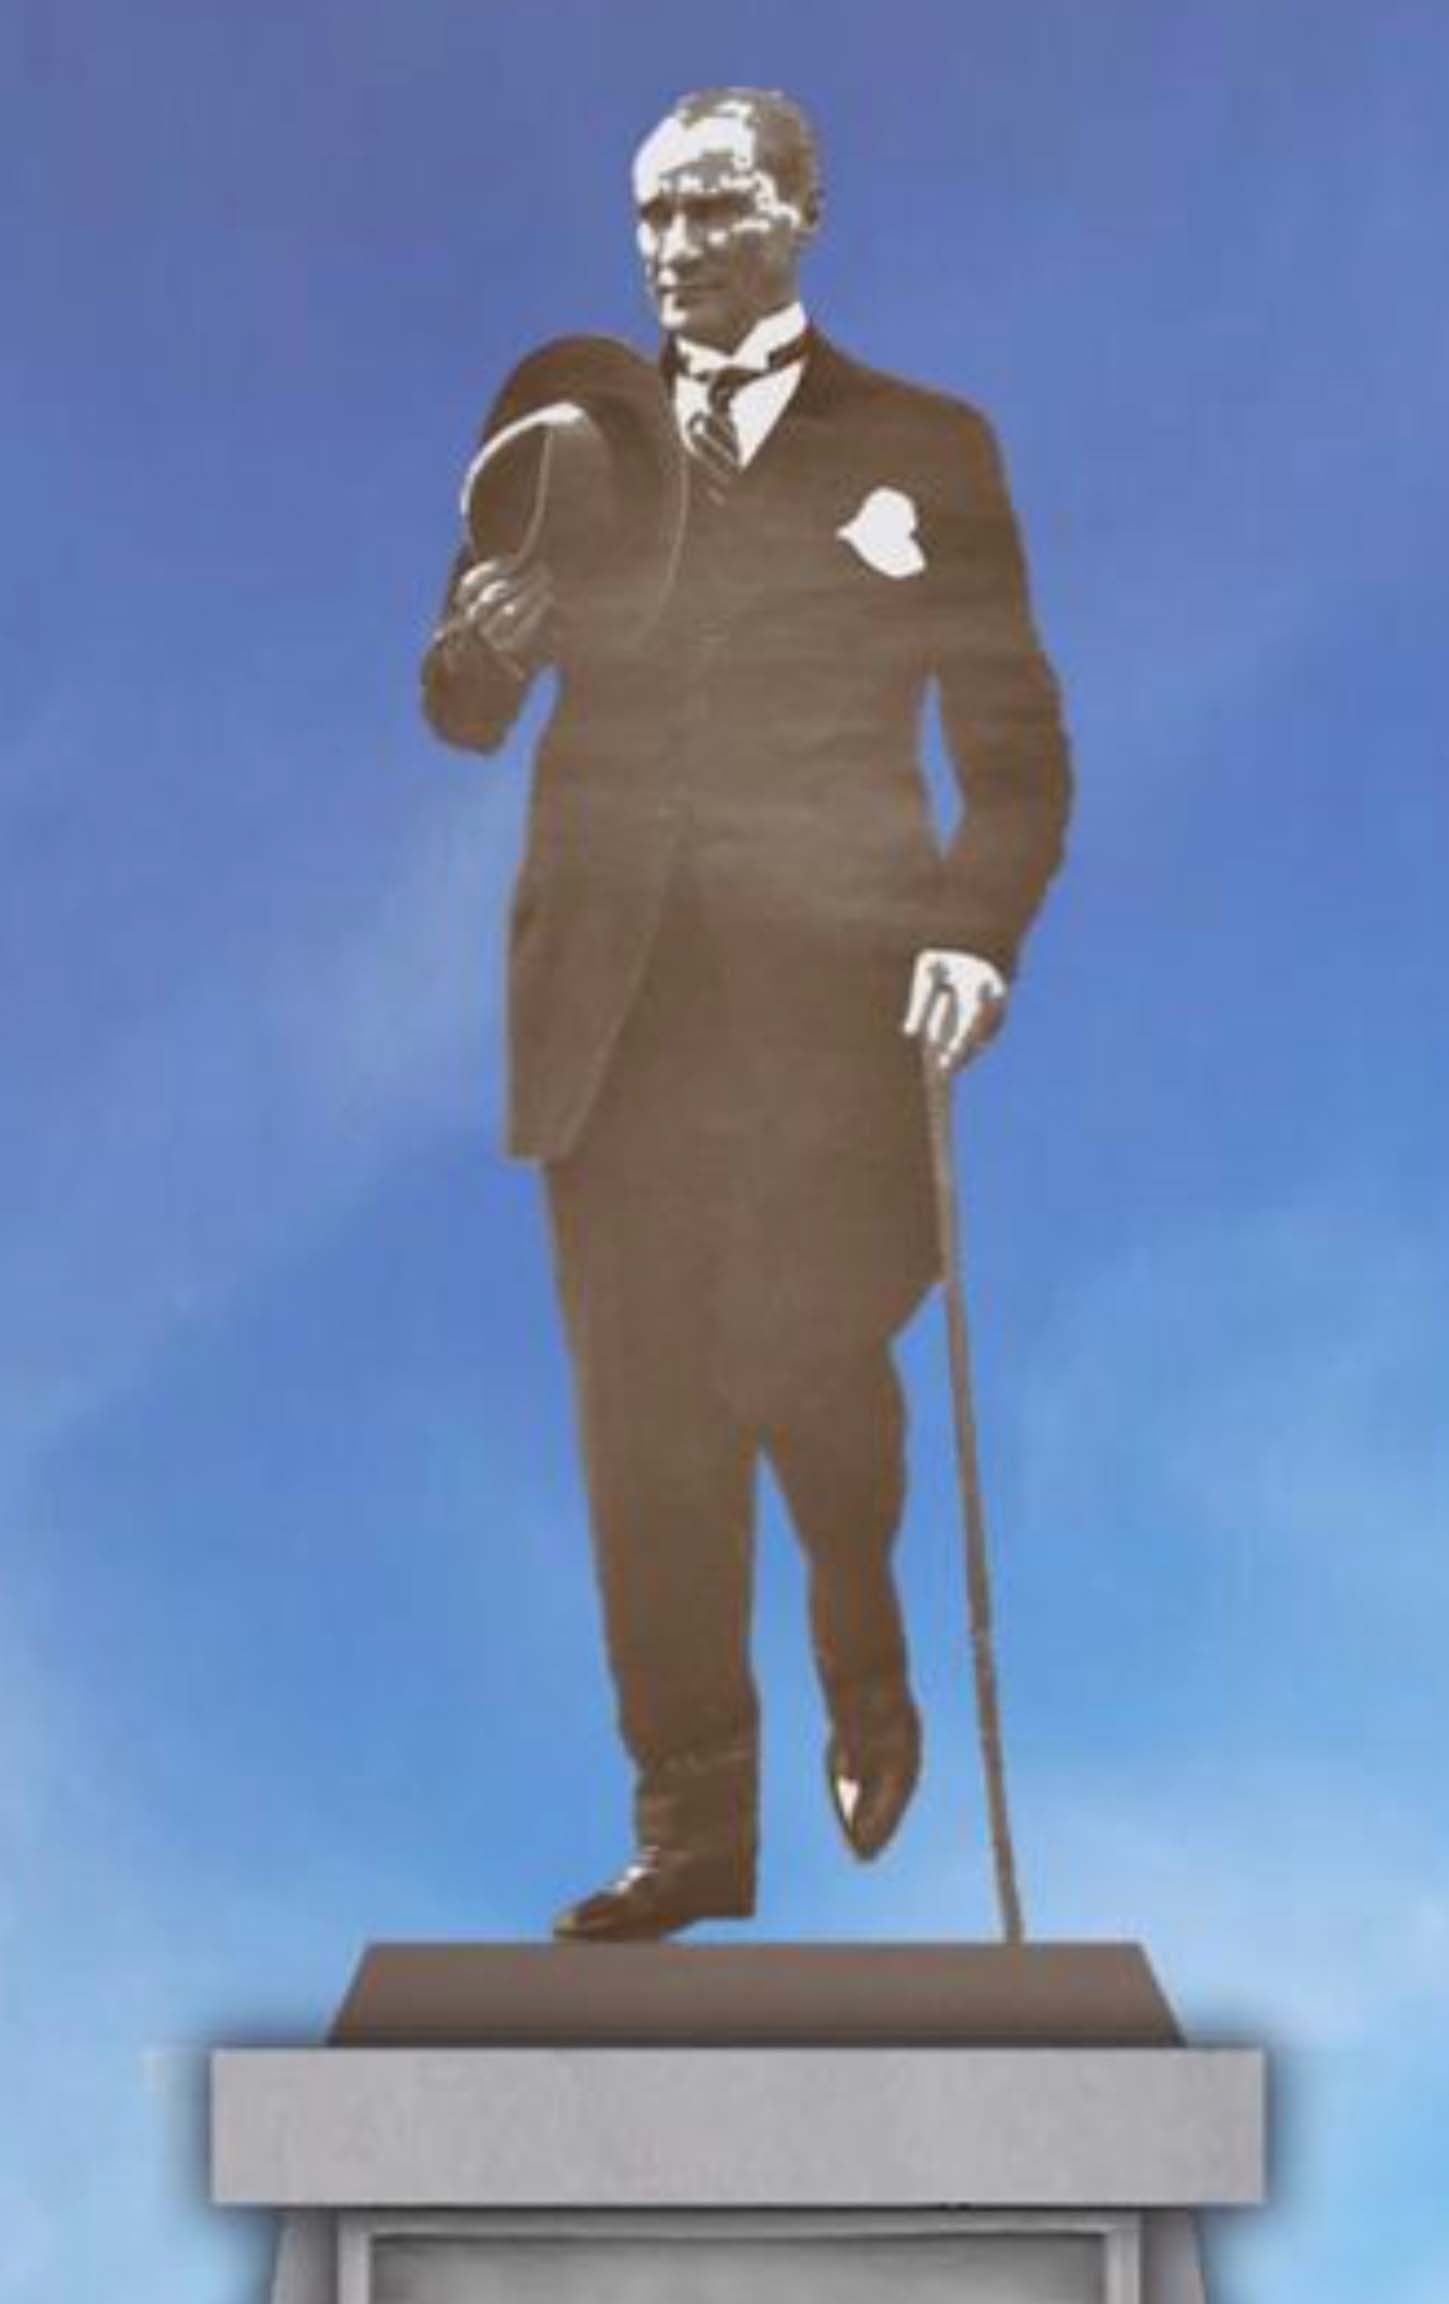 Cumhuriyet Meydanı’nda 2 Atatürk Anıtı olacak